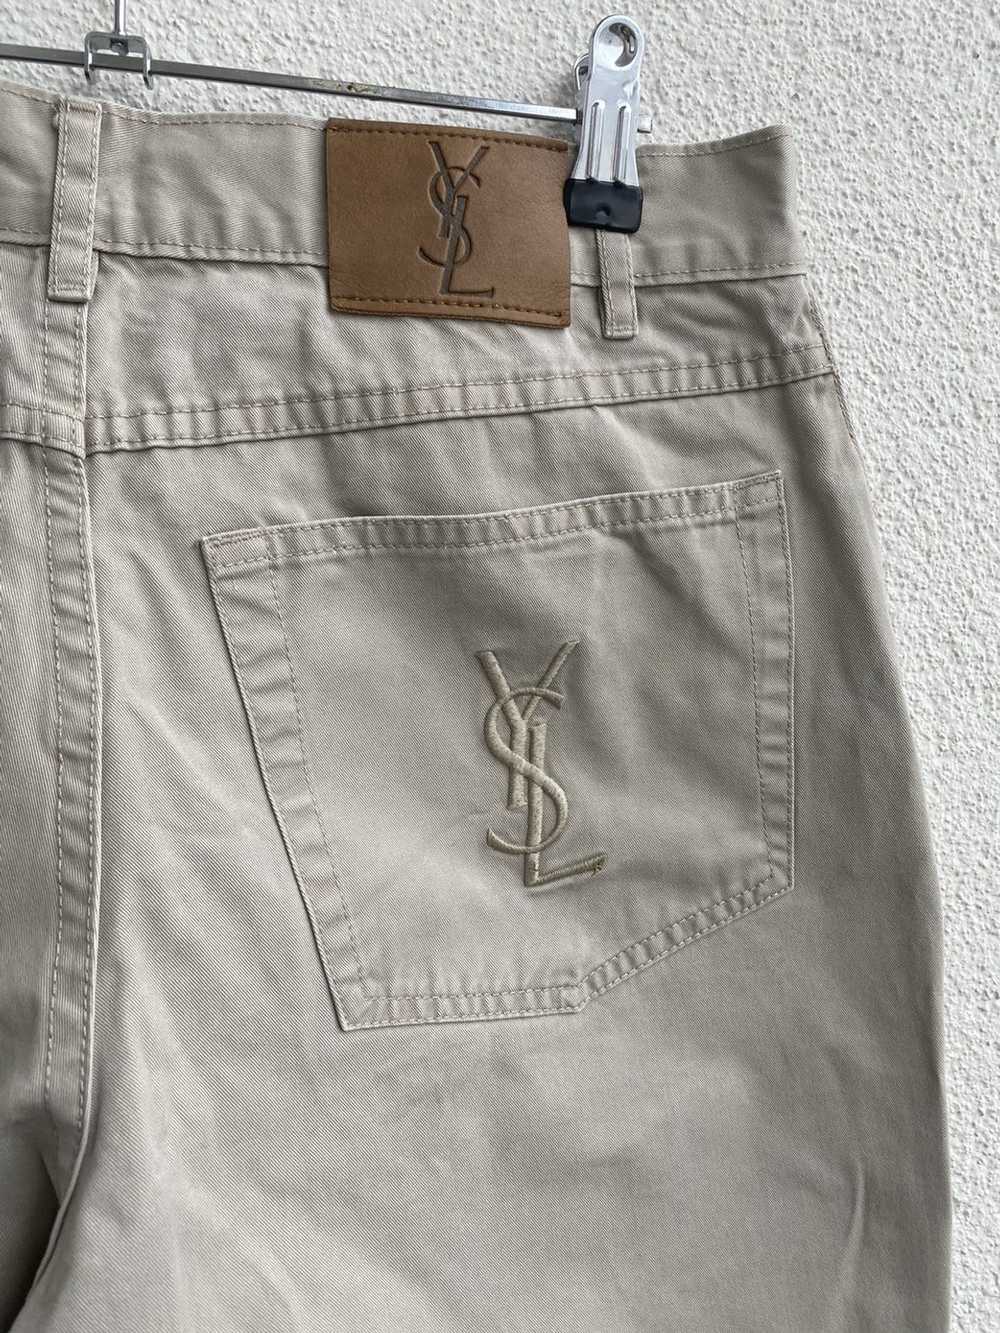 Yves Saint Laurent Beige YSL Cotton Jeans - image 1